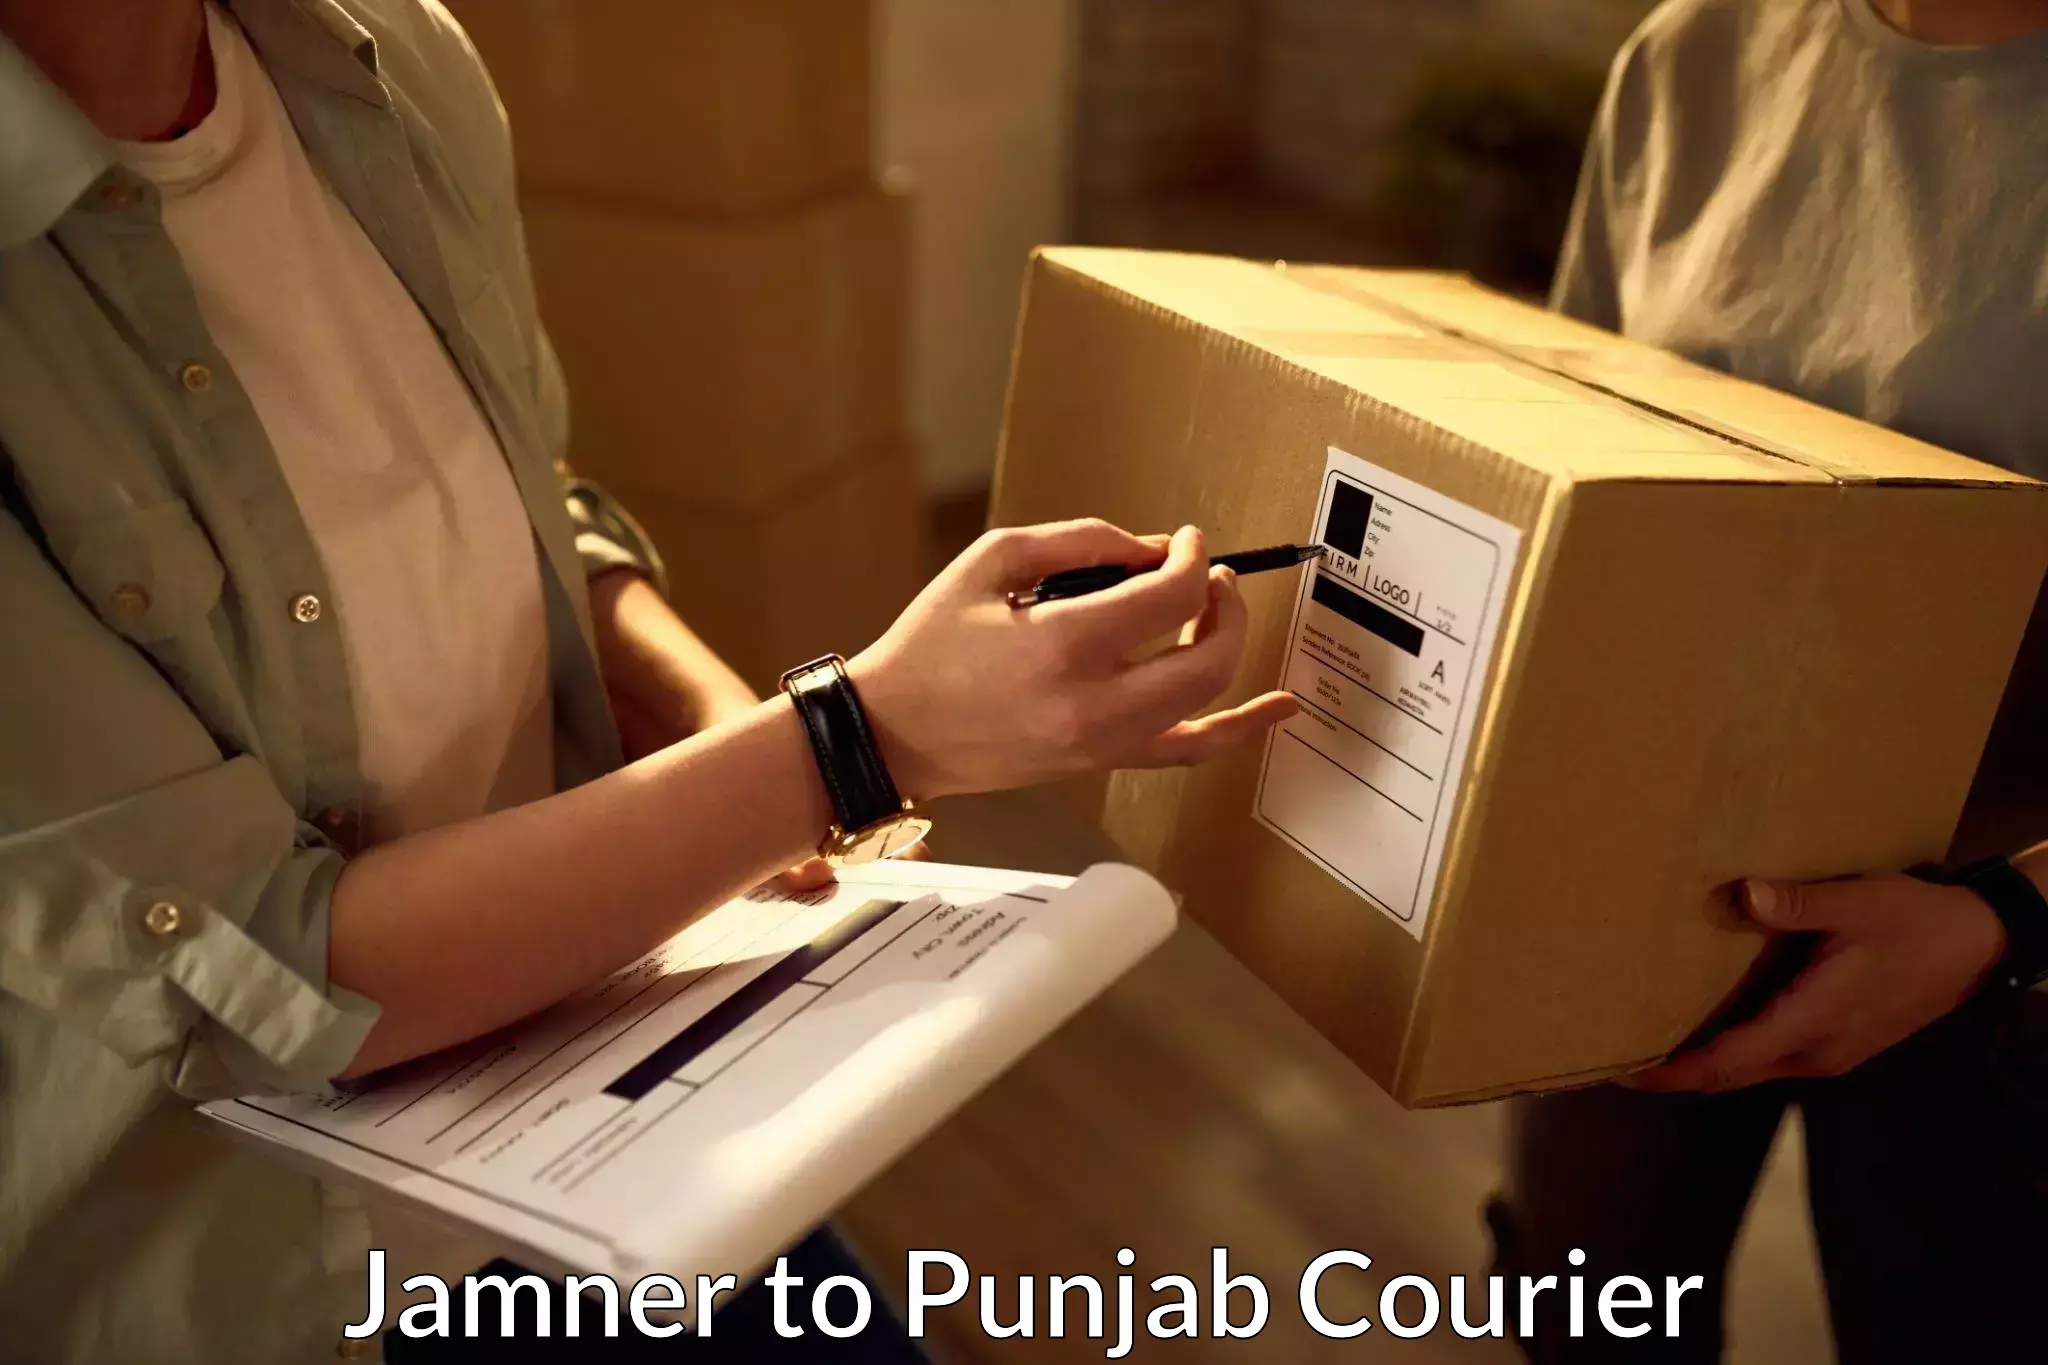 Efficient courier operations Jamner to Zirakpur